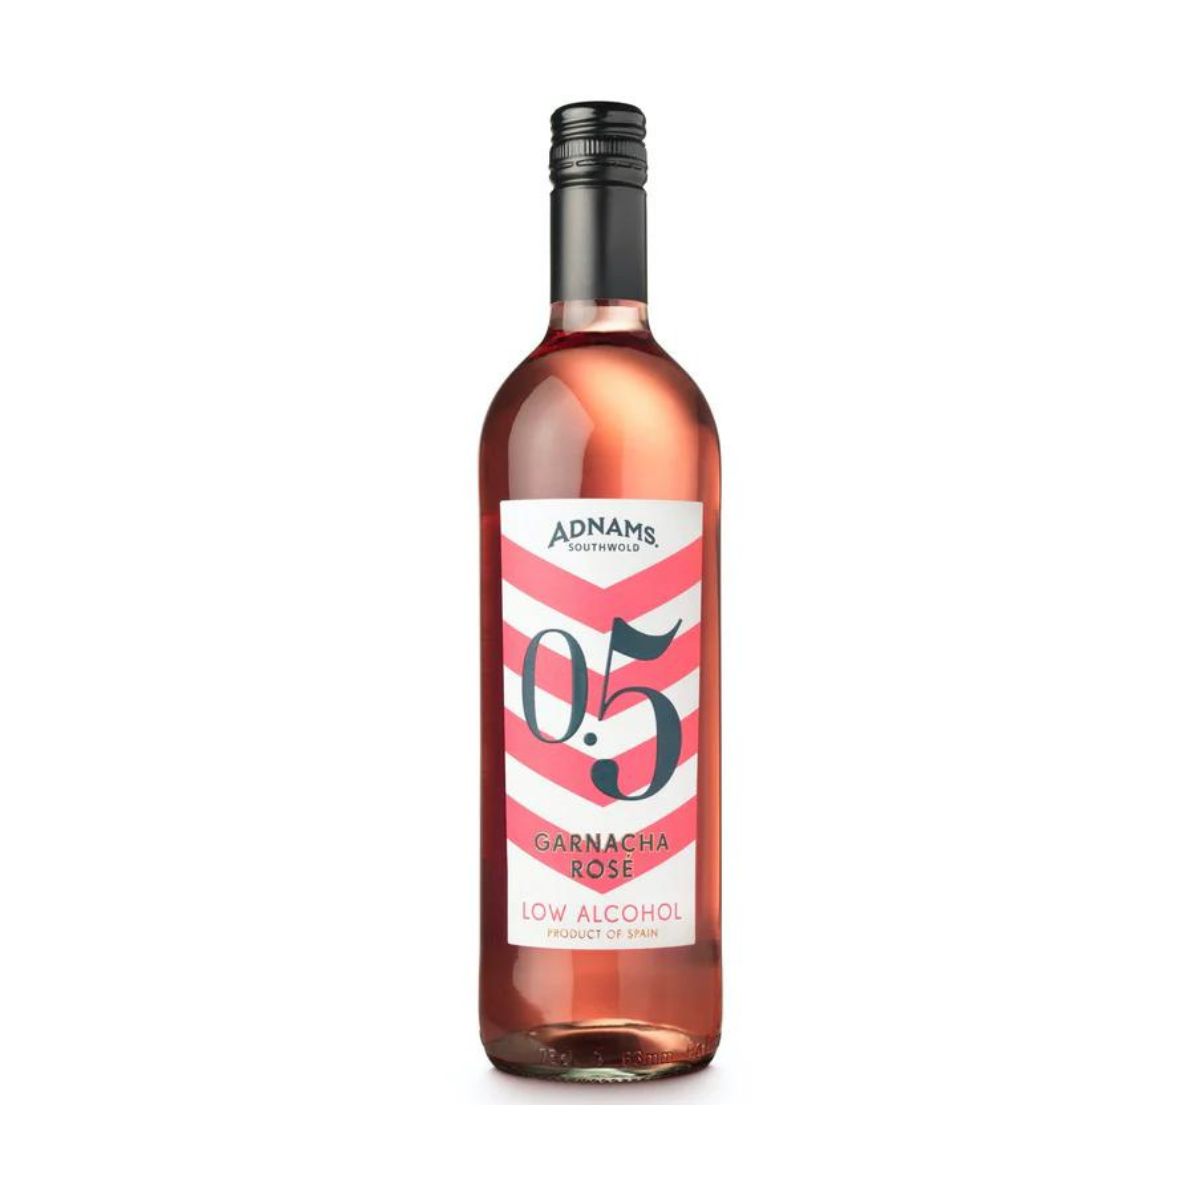 Adnams Garnacha - Low Alcohol Rosé Wine